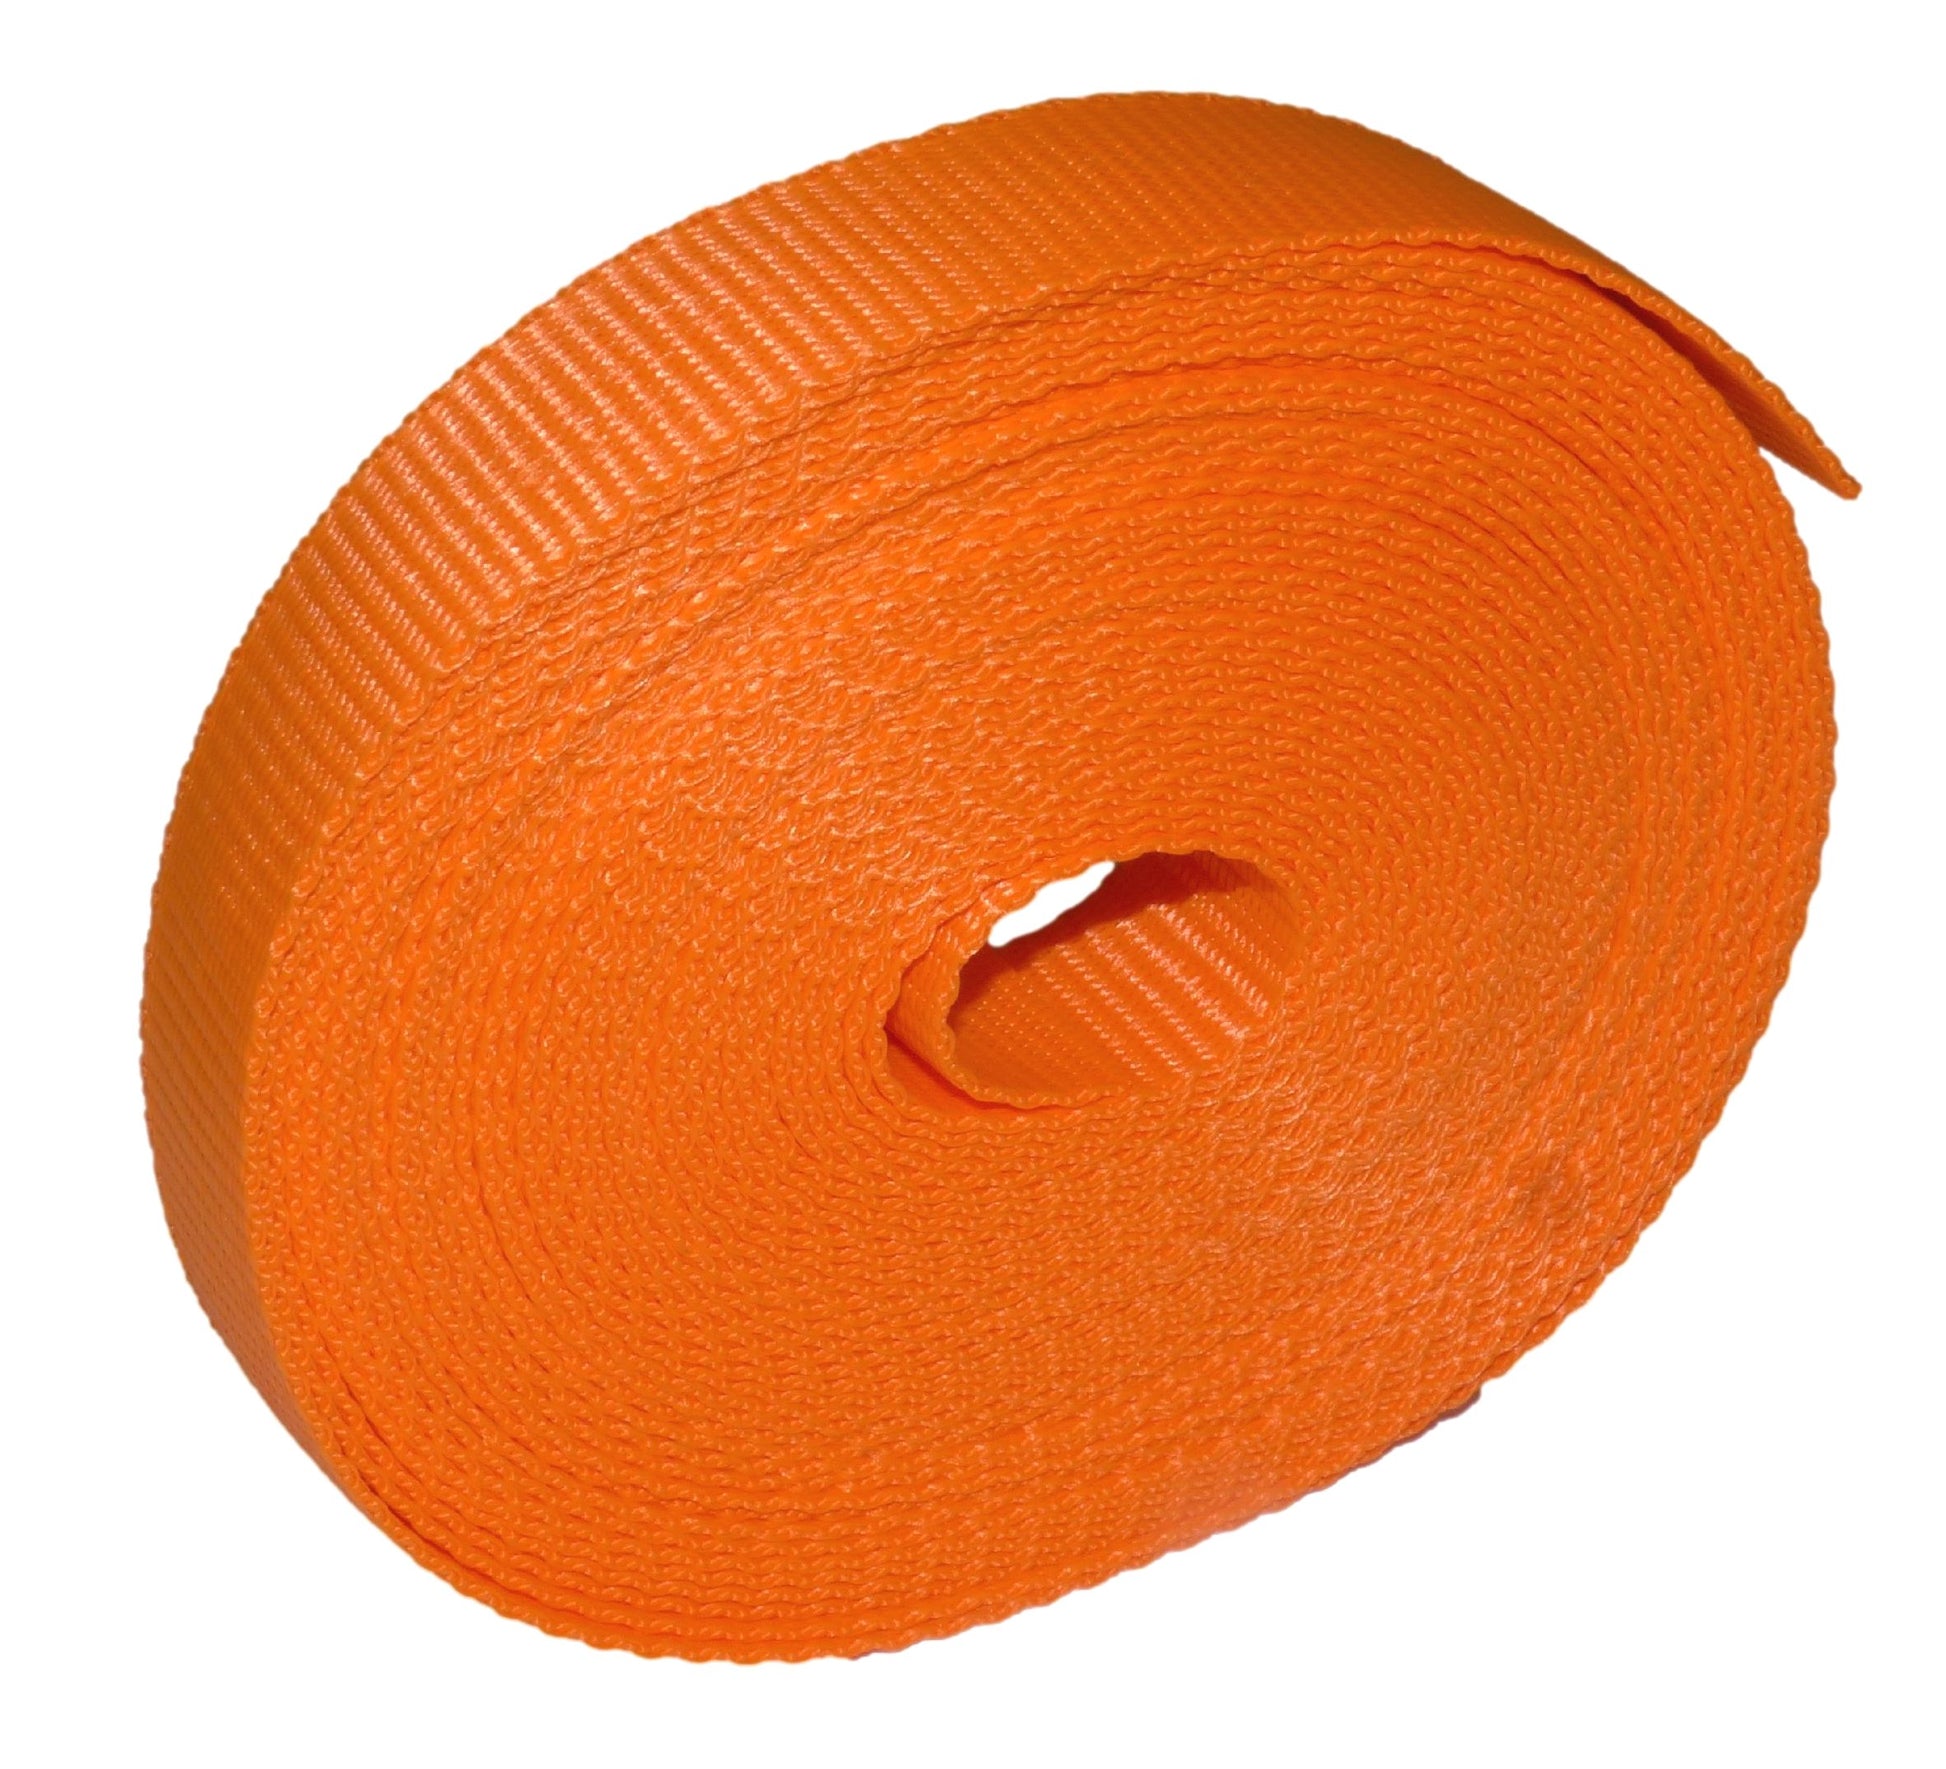 Benristraps 25mm Polypropylene Webbing, 10 metres (32') in orange